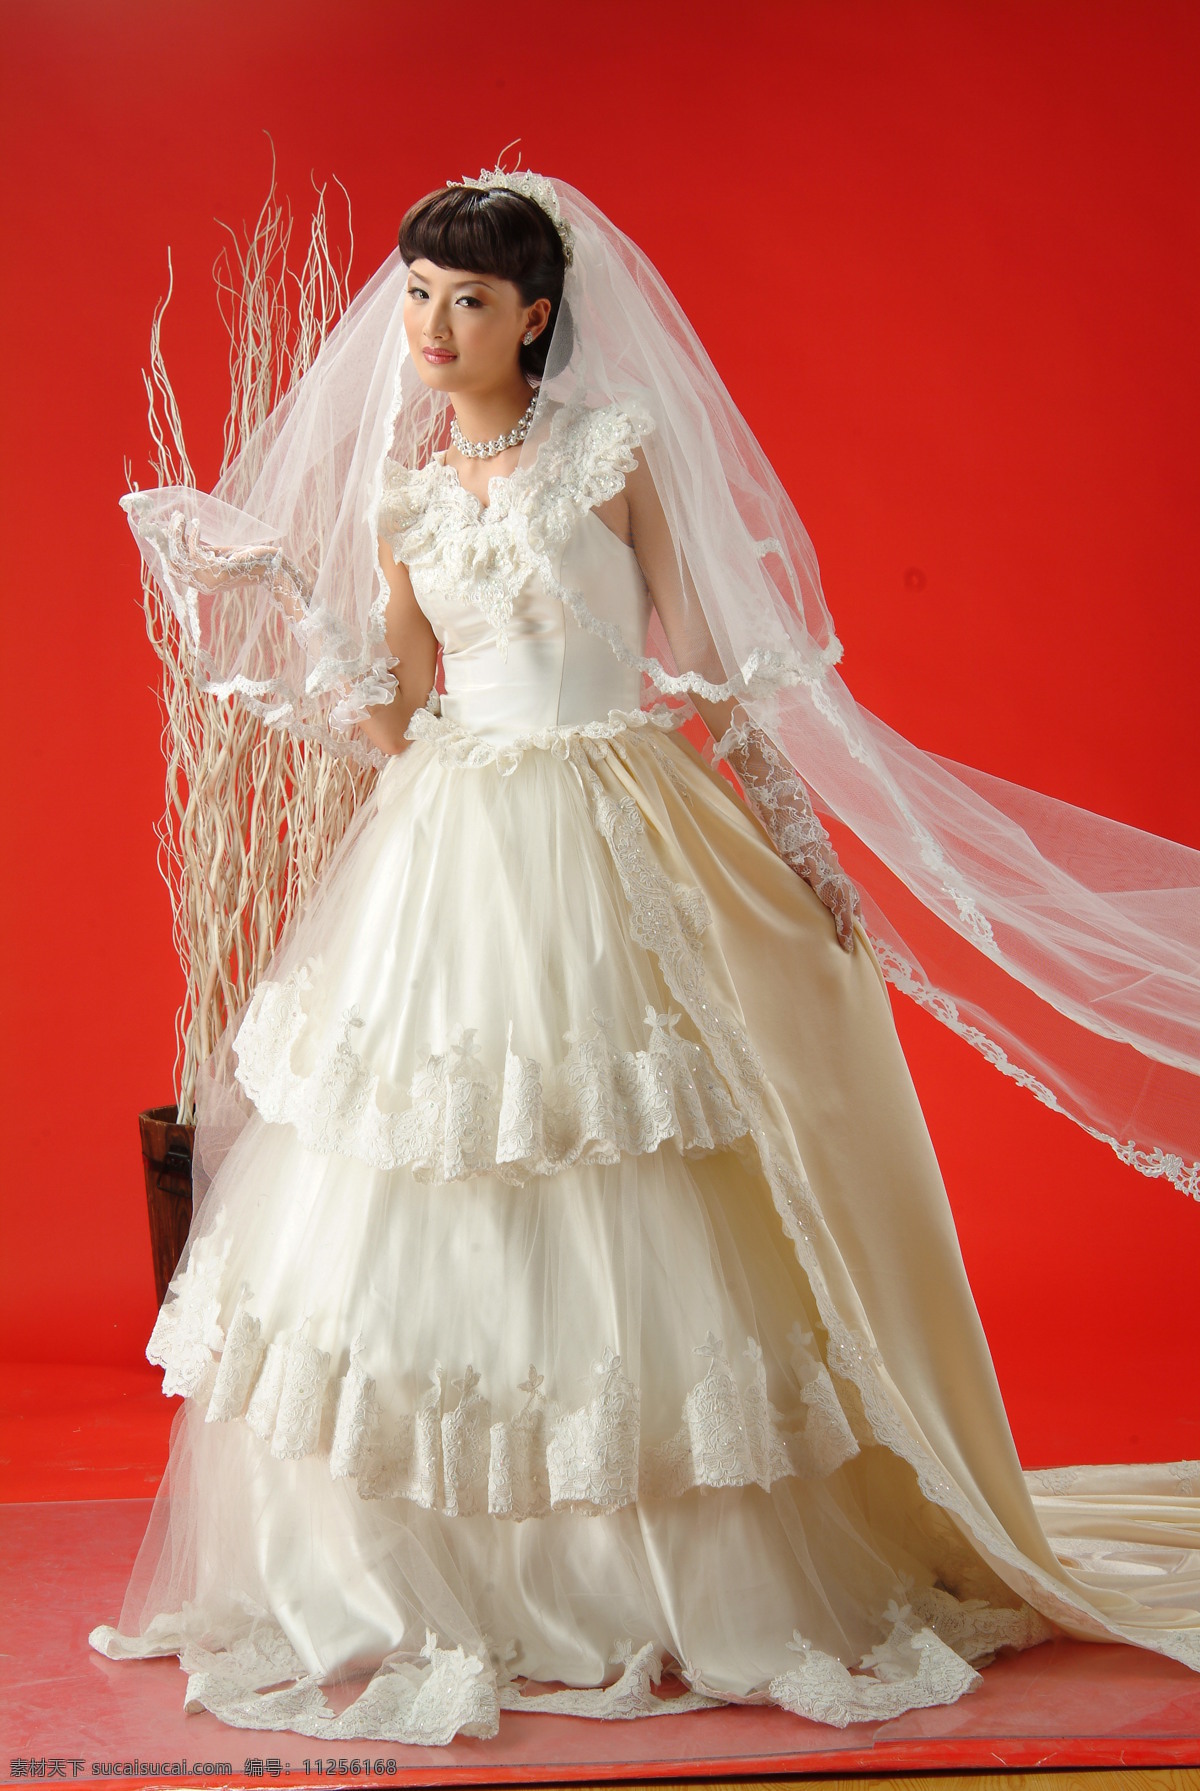 香港写真 婚纱照 美女 新郎 红地毯 花朵 笑容 婚纱摄影 香港 婚纱 二 人物摄影 人物图库